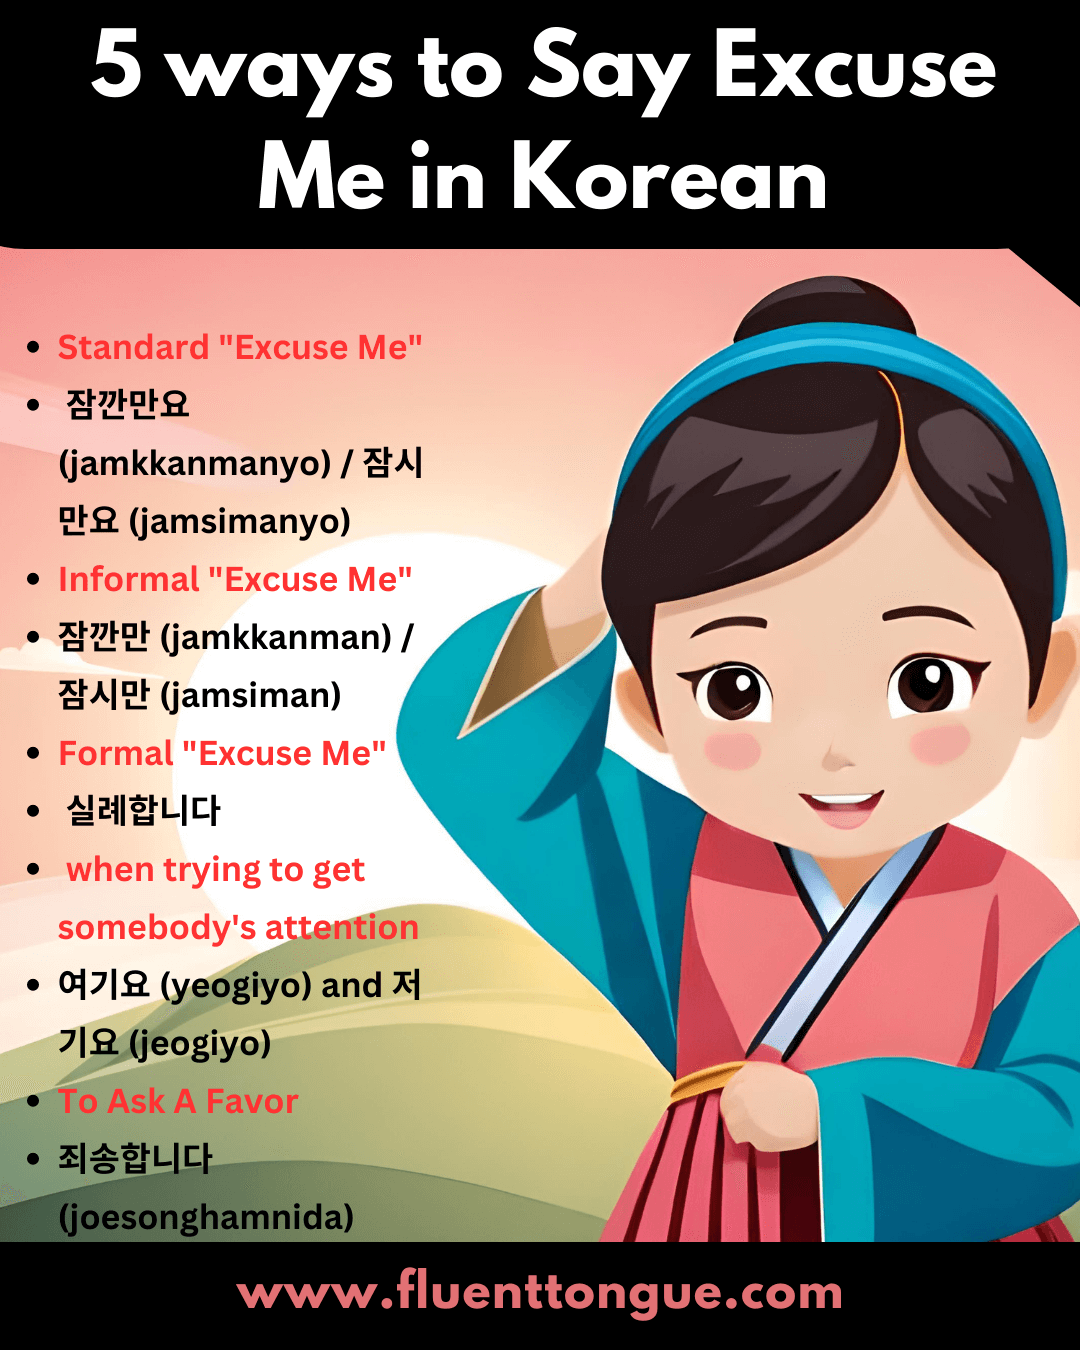 excuse me in korean